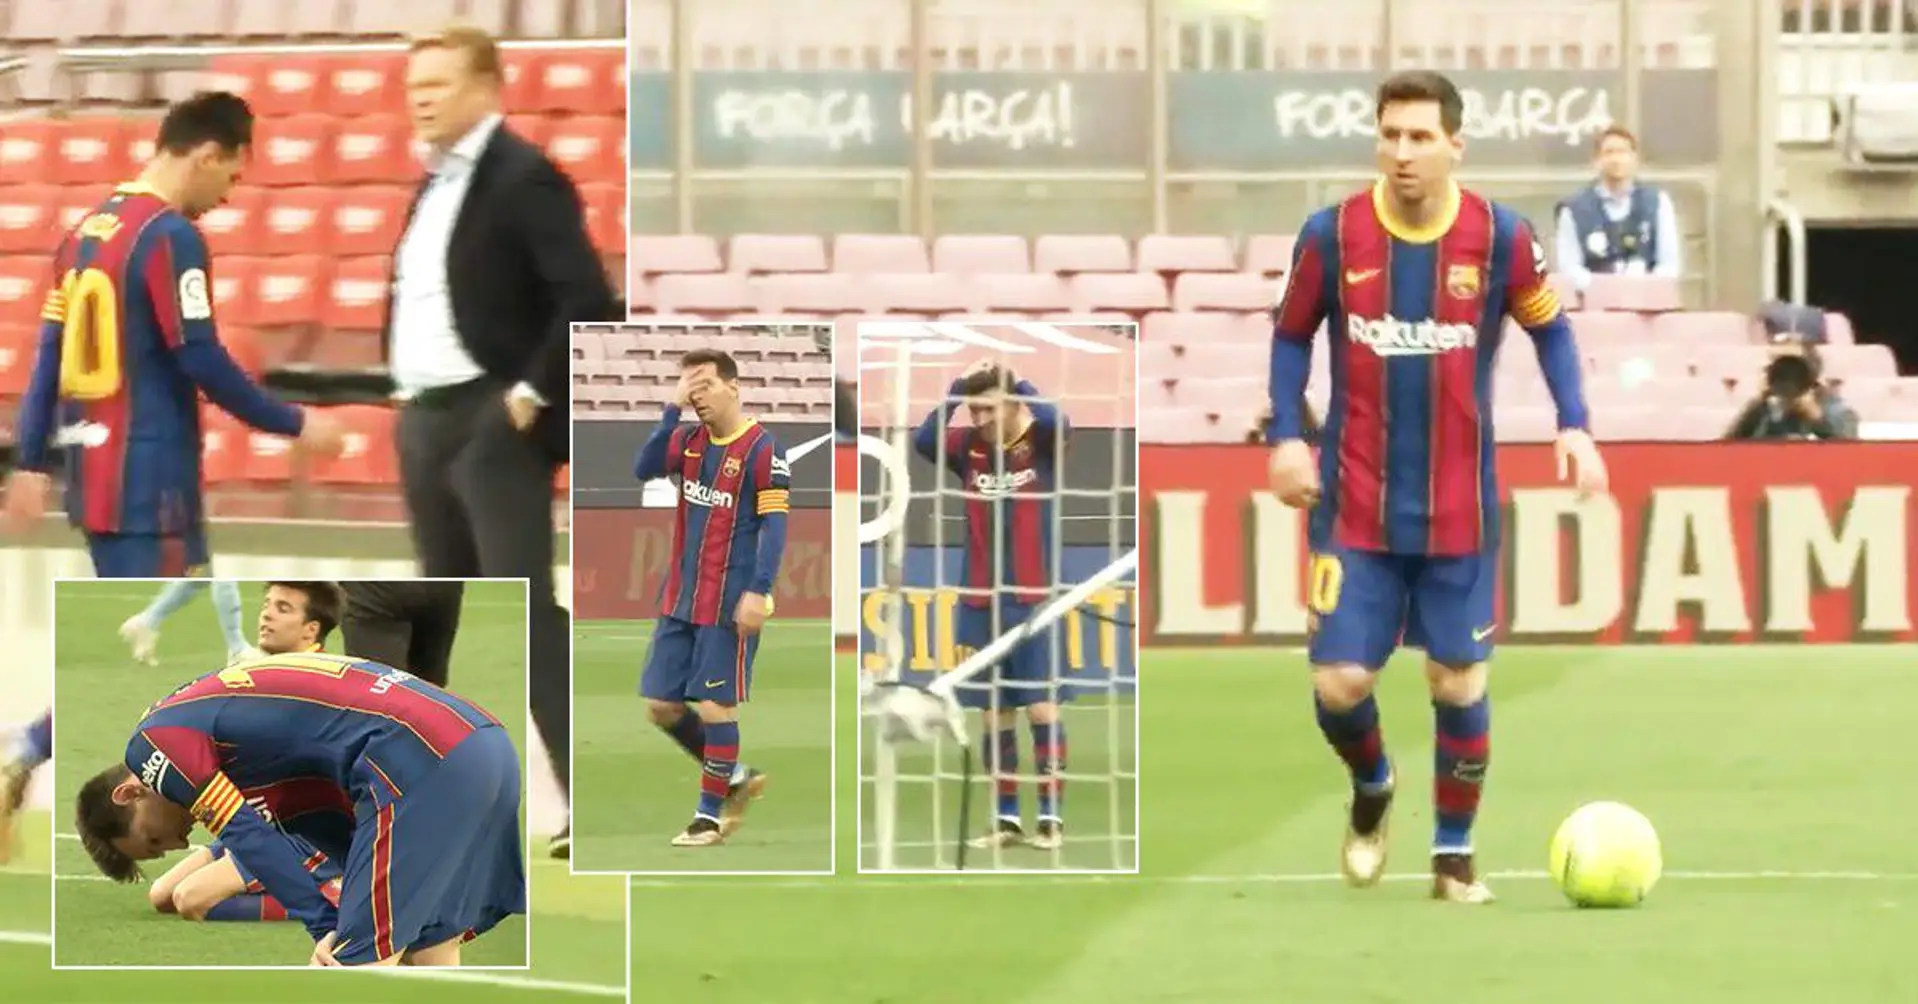 "Cela l’a tué à l’intérieur". Des images inédites de la réaction de Leo Messi à la défaite cruciale du Barça ont été publiées